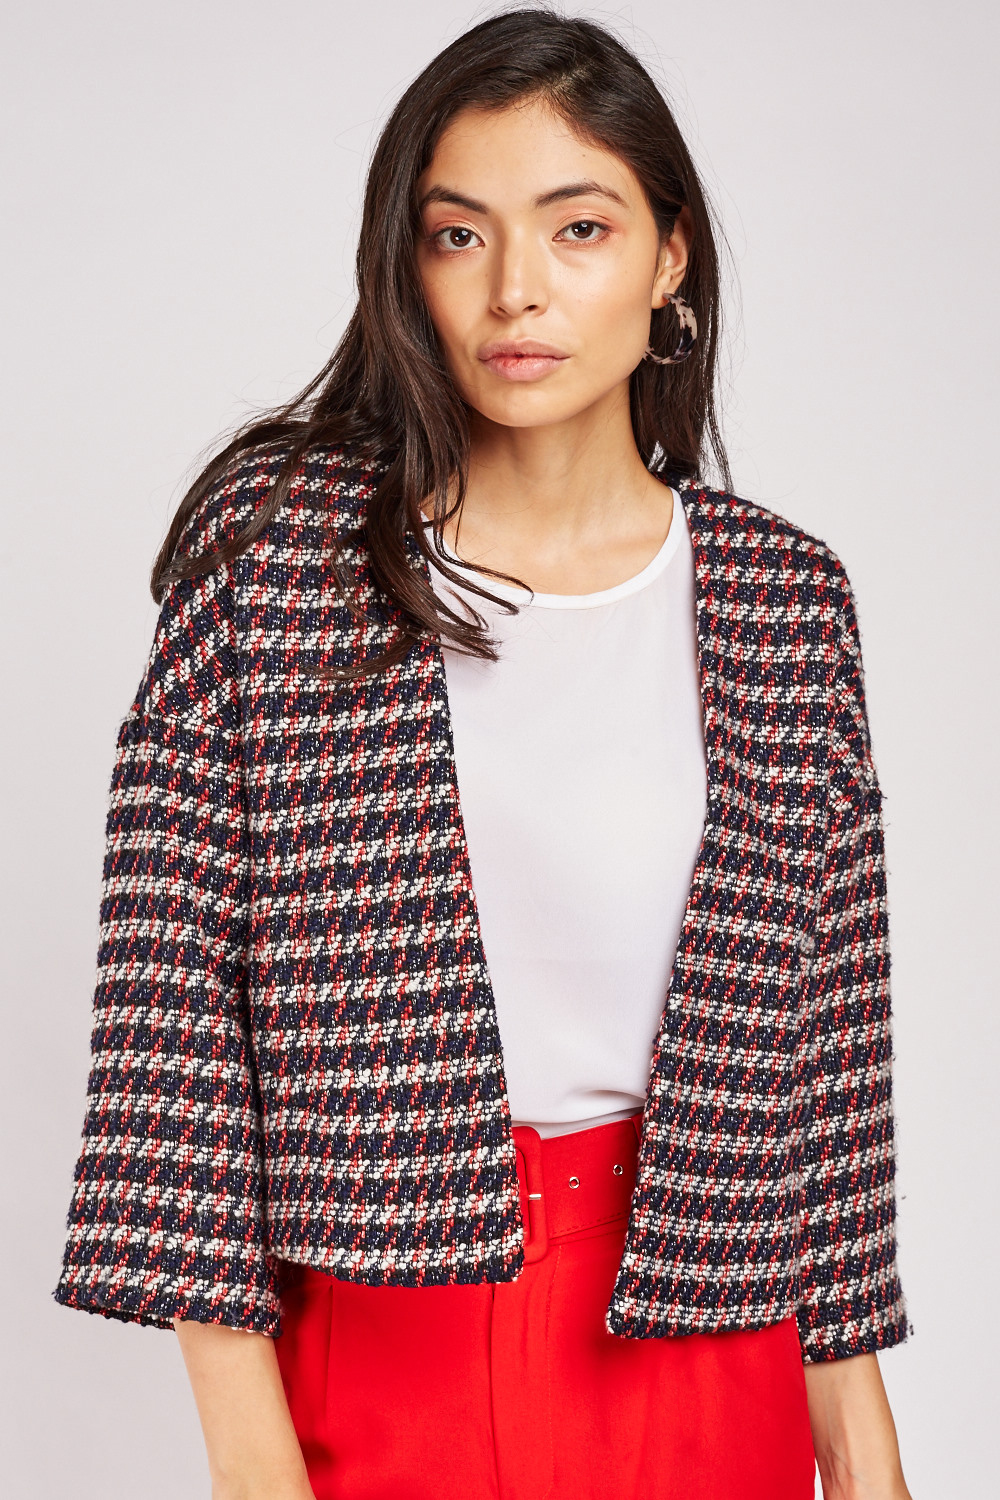 Multi Coloured Tweed Jacket - Just $7